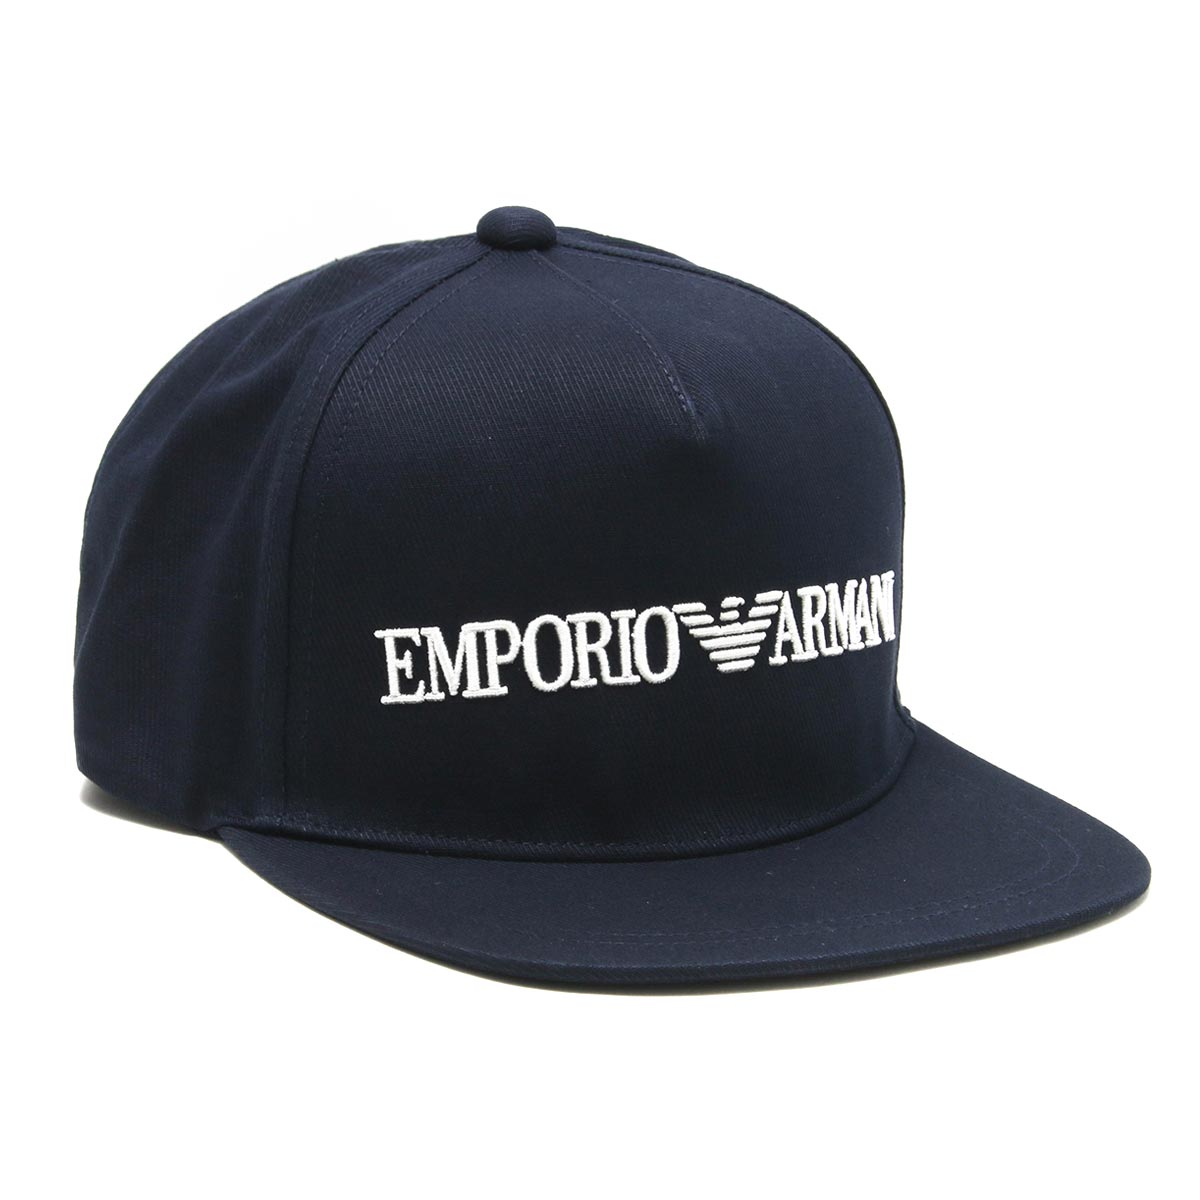 エンポリオアルマーニ 帽子/キャップ メンズ レディース イーグルマーク ネイビー 627507 0A525 00035 EMPORIO ARMANI